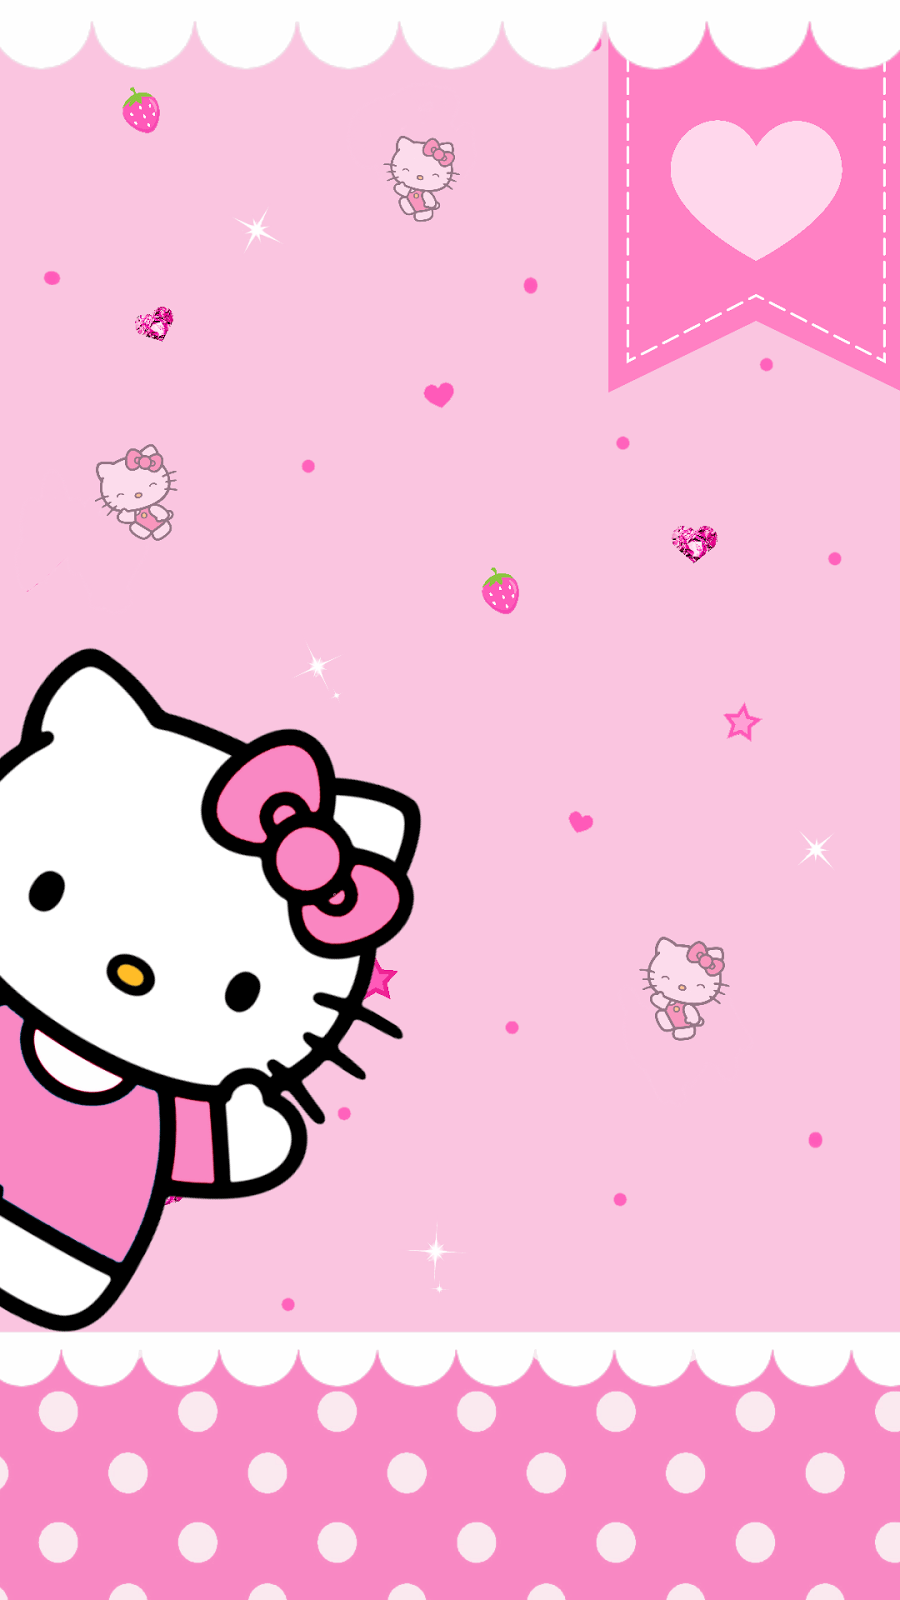 Màu hồng tươi tắn, chú mèo đáng yêu và phong cách trẻ trung là những gì bạn sẽ tìm thấy trong bộ sưu tập Pink Kitty Wallpapers trên Wallpaper Cave. Hãy để những hình ảnh đẹp đến nao lòng này trang trí cho máy tính của bạn trở nên dễ chịu và tươi mới hơn!